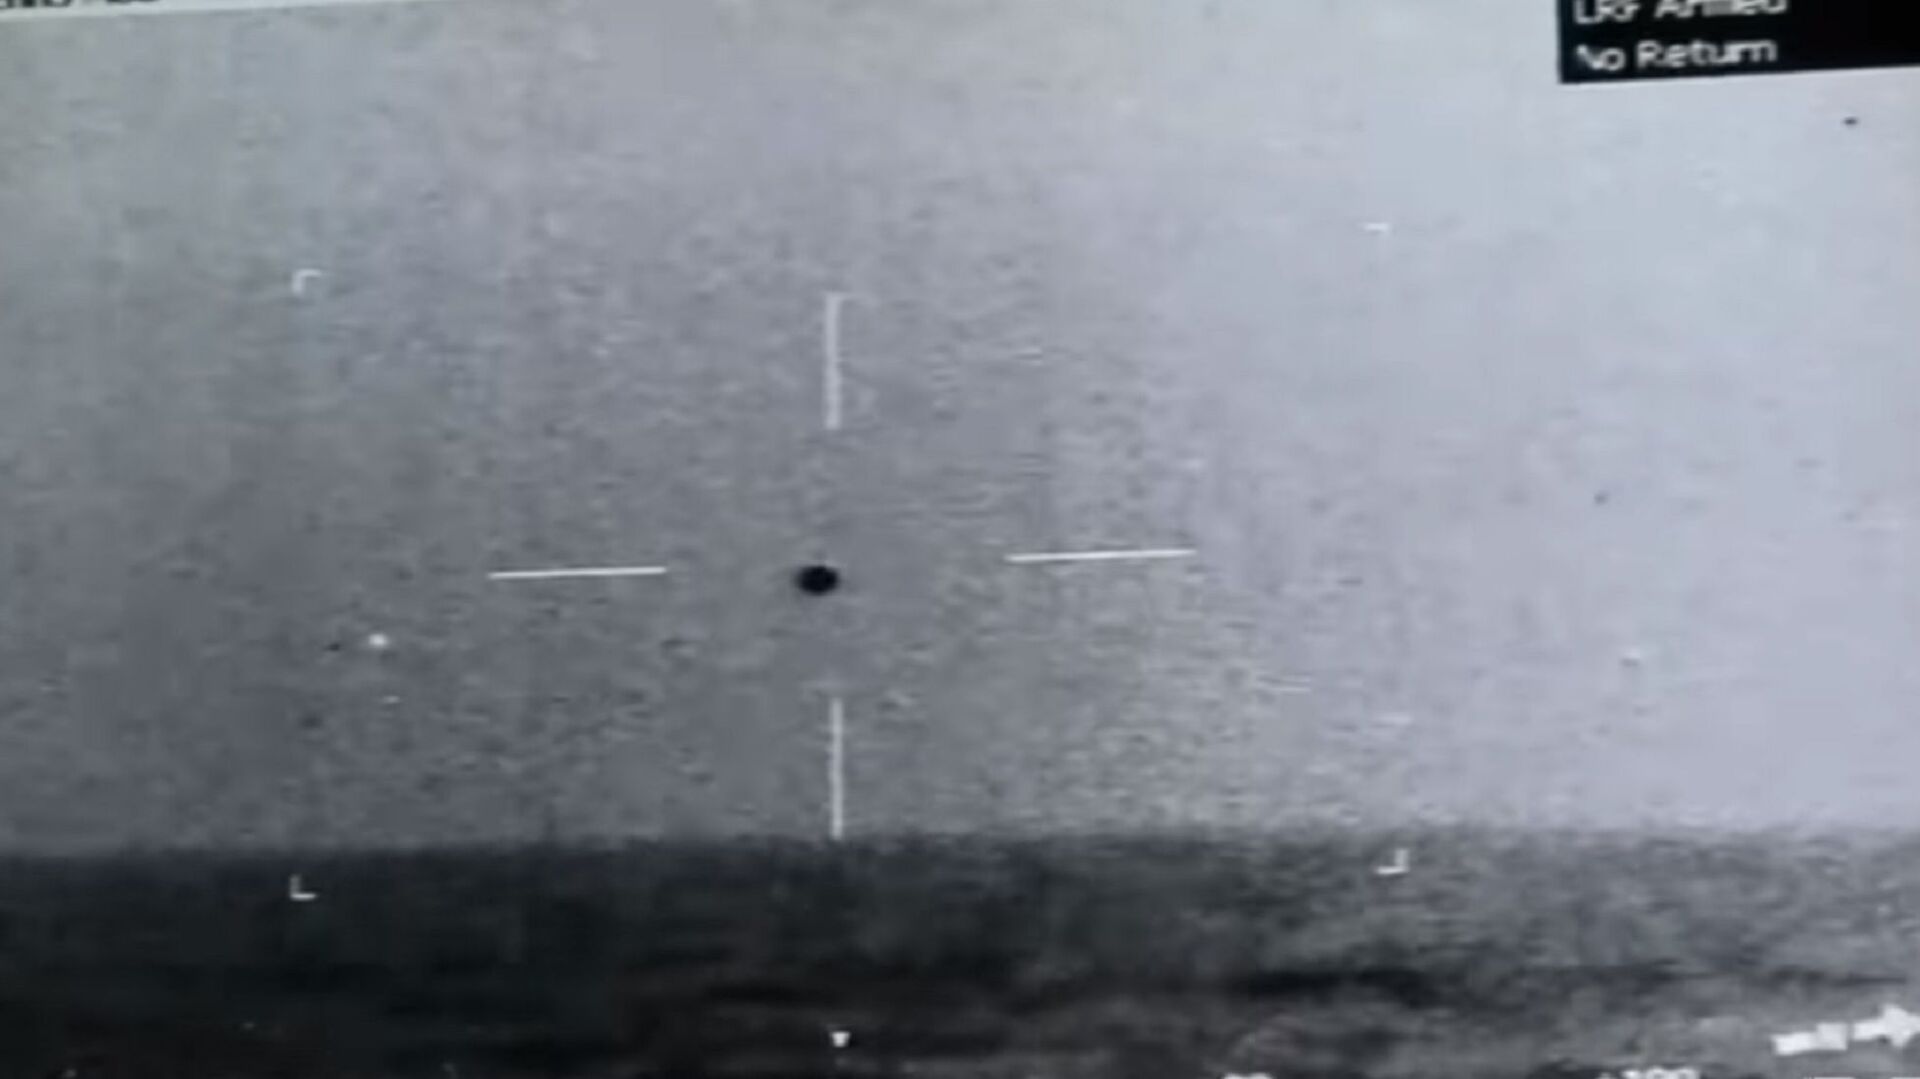 Snimak NLO iznad mora u blizini Kalifornije koji je načinila američka ratna mornarica - Sputnik Srbija, 1920, 15.05.2021